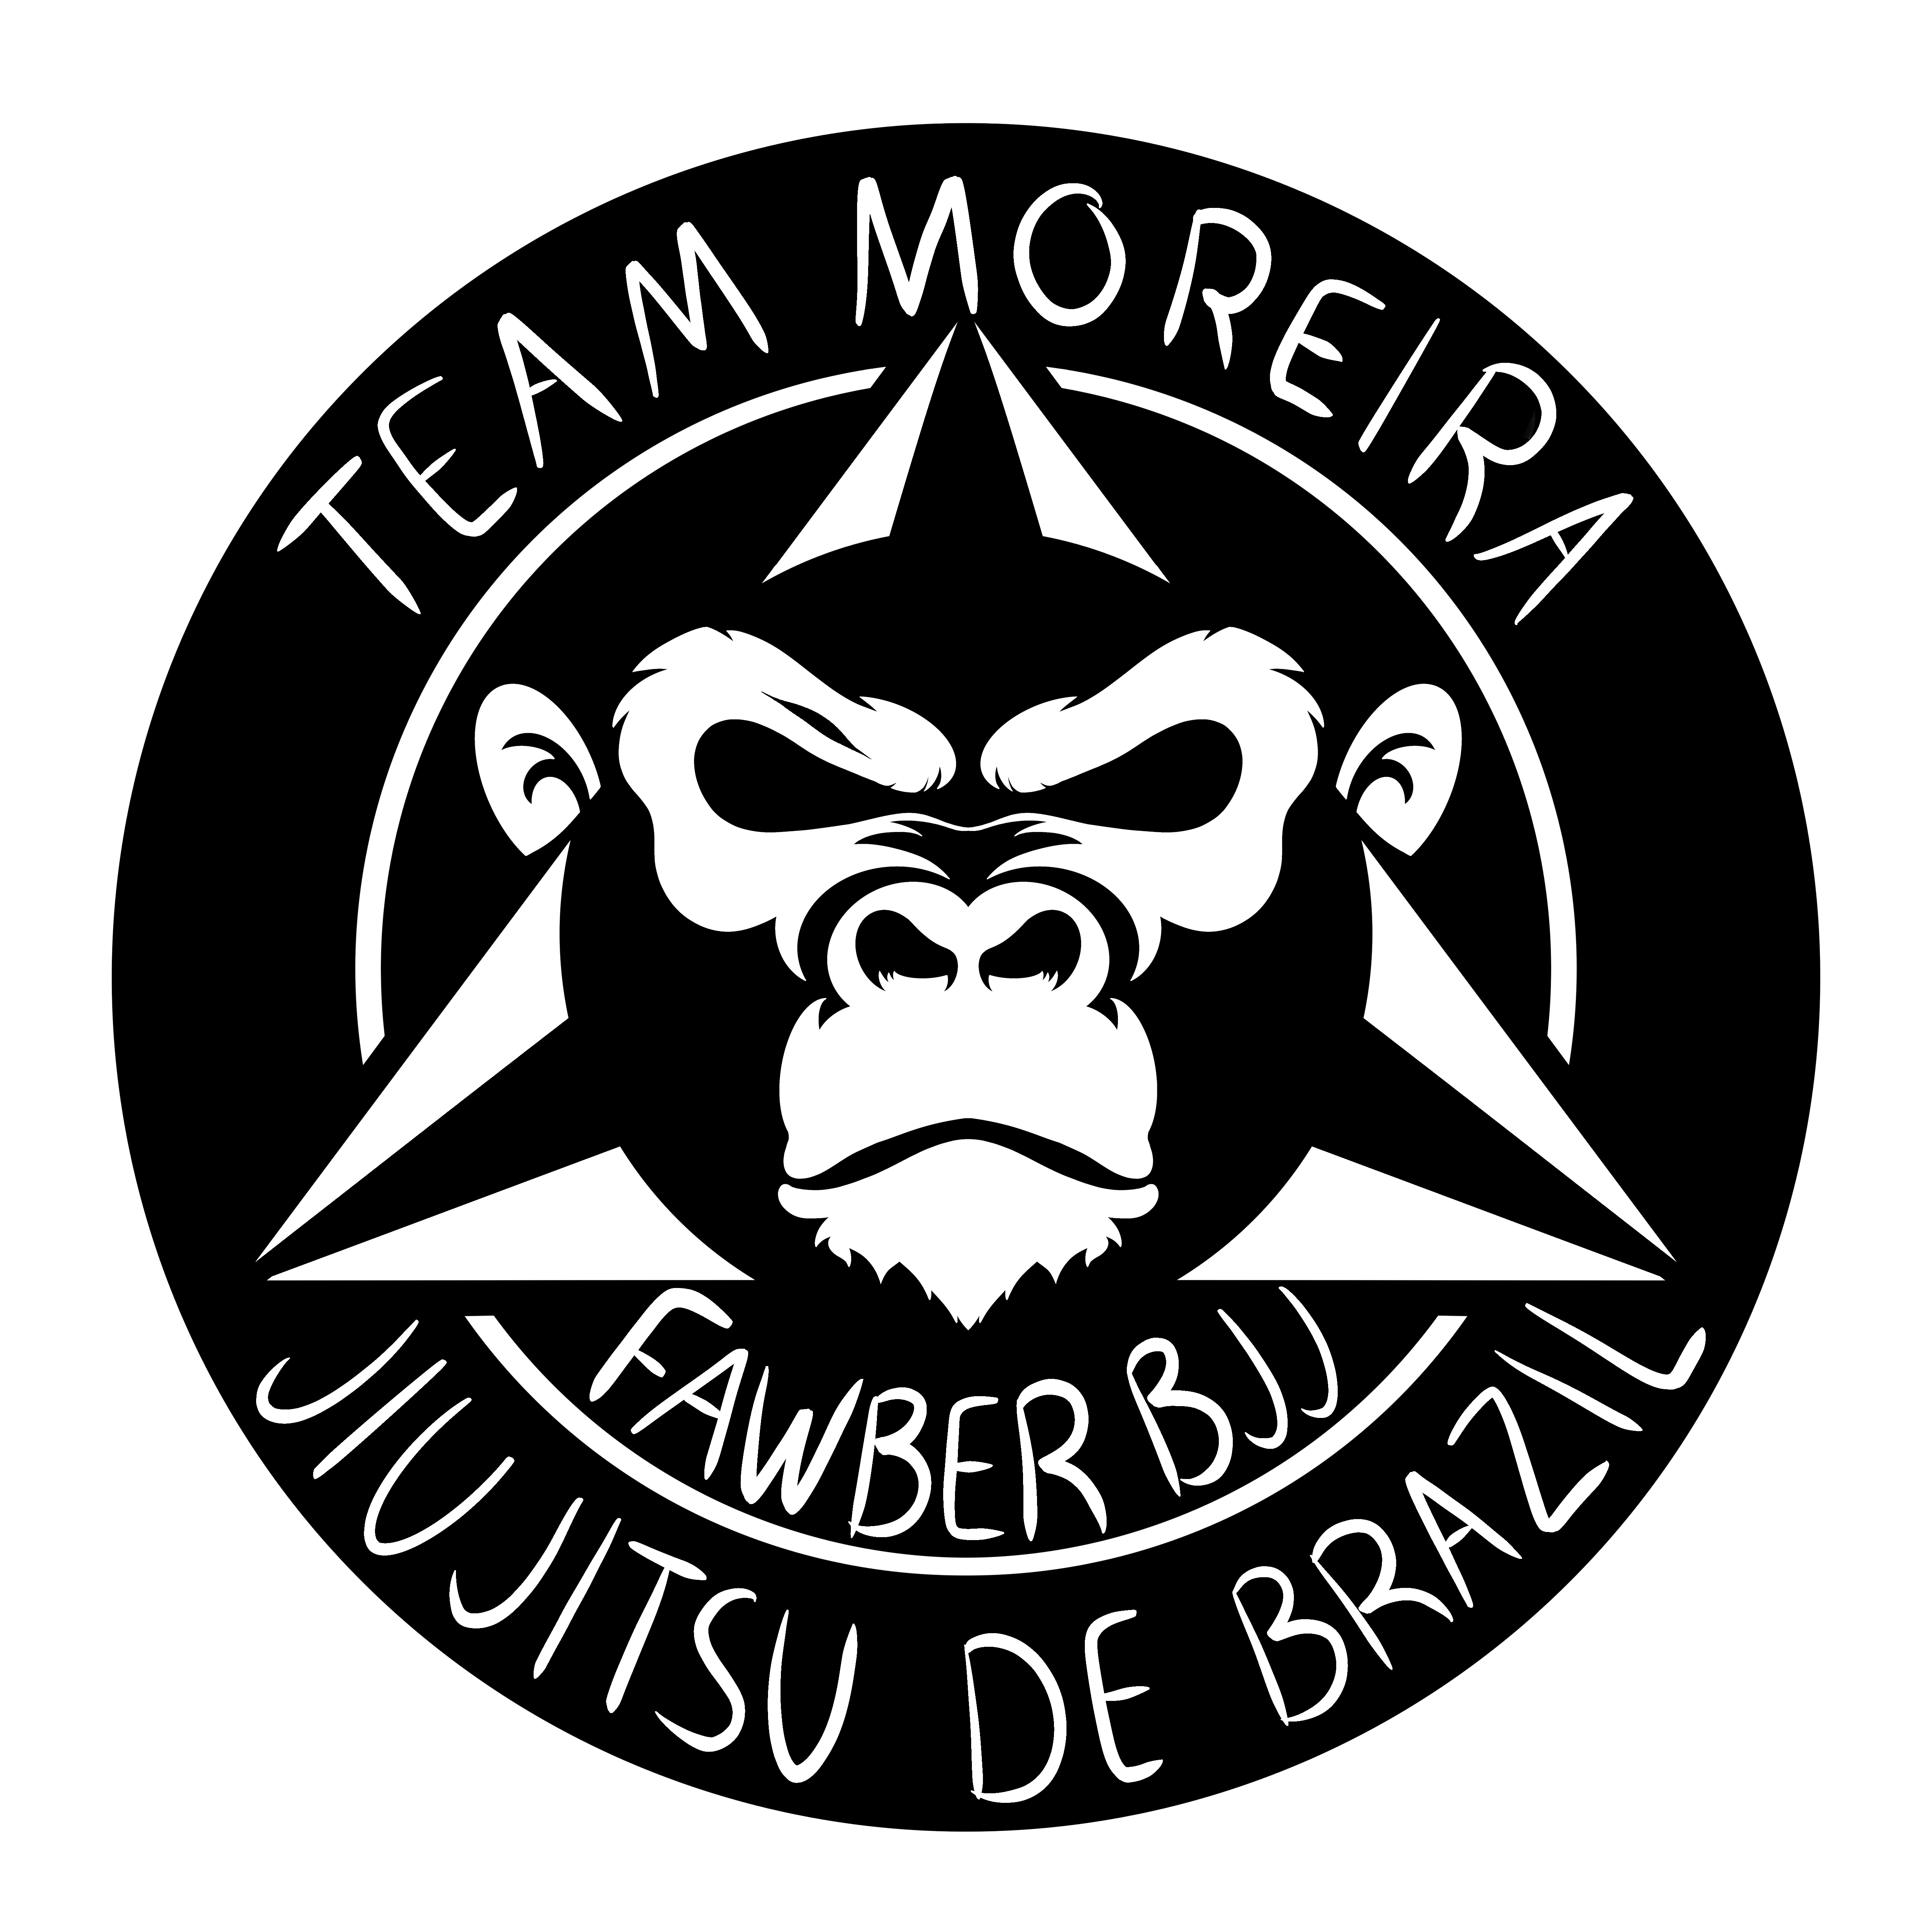 Fawber BJJ Logo. Black and white